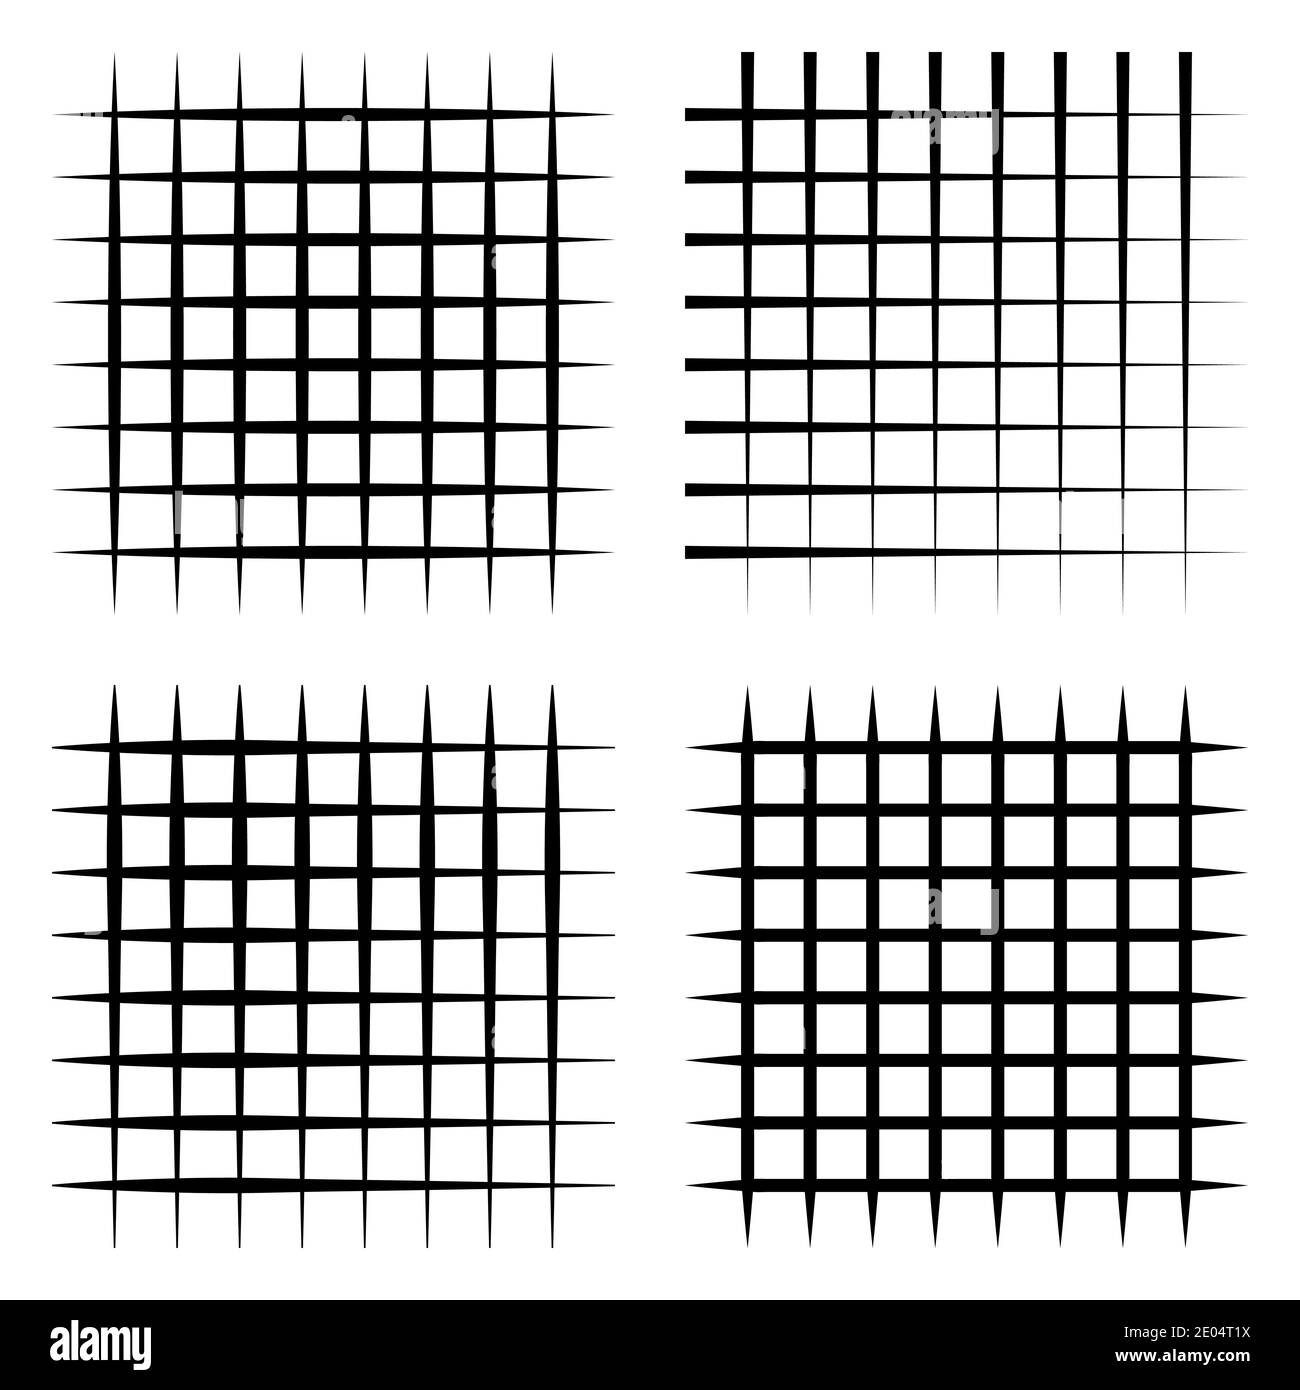 Définir une grille abstraite bandes élégantes lignes, grille vectorielle bandes noires horizontales et verticales. Carré coché, motif vectoriel en tissu écossais Illustration de Vecteur